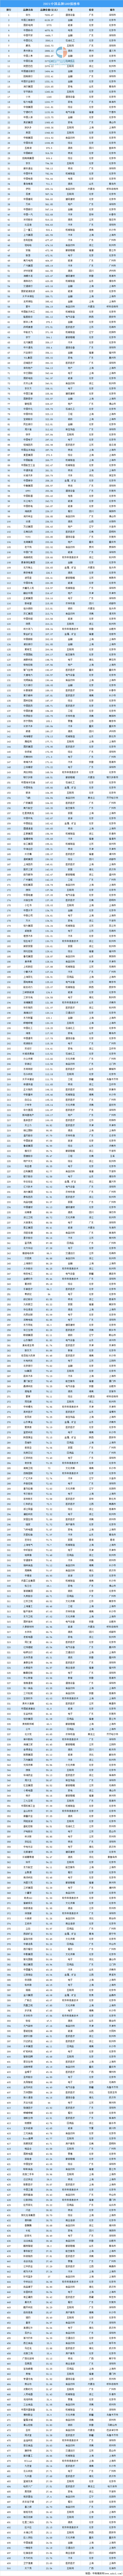 中国商标排行_2021世界品牌500强中国企业排行榜(附完整名单)